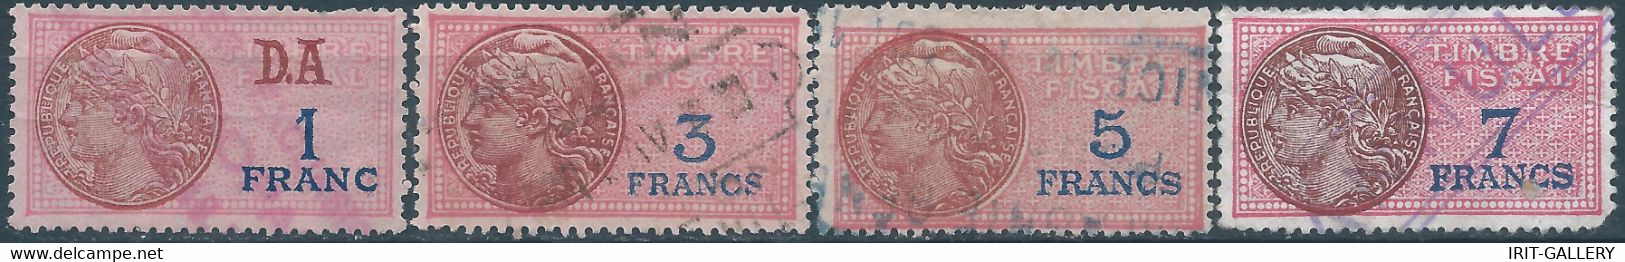 FRANCE,Revenue Stamp Fiscal Tax, 1-3-5-7 Fr,Used - Marche Da Bollo